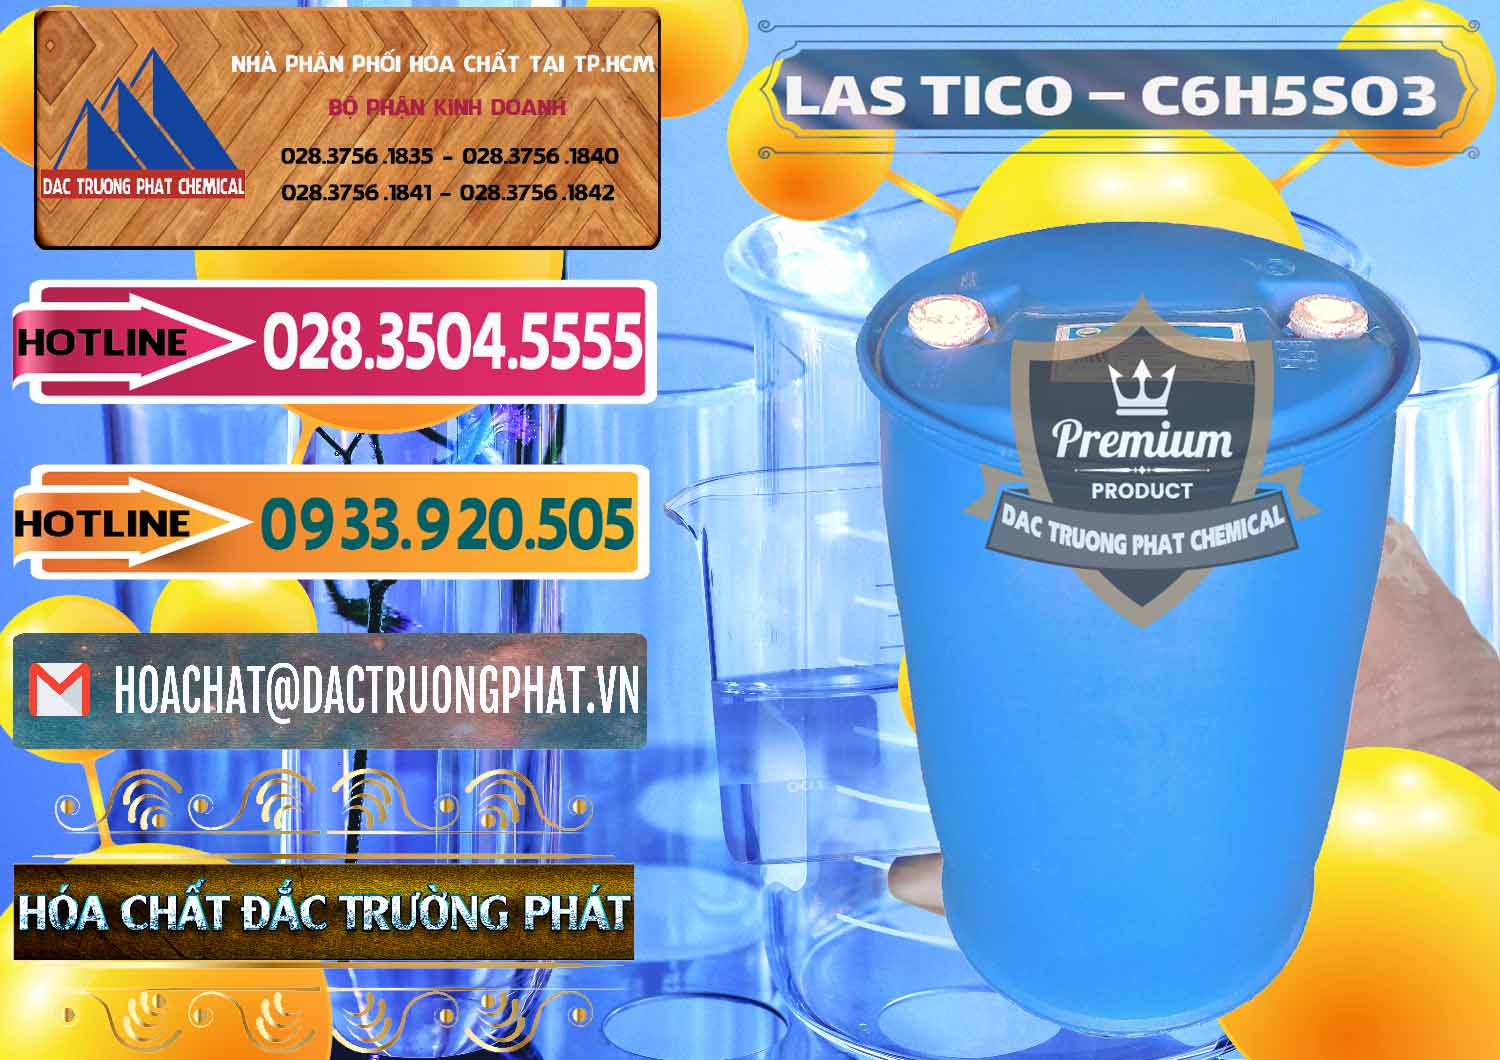 Công ty kinh doanh - cung cấp Chất tạo bọt Las H Tico Việt Nam - 0190 - Phân phối _ bán hóa chất tại TP.HCM - dactruongphat.vn